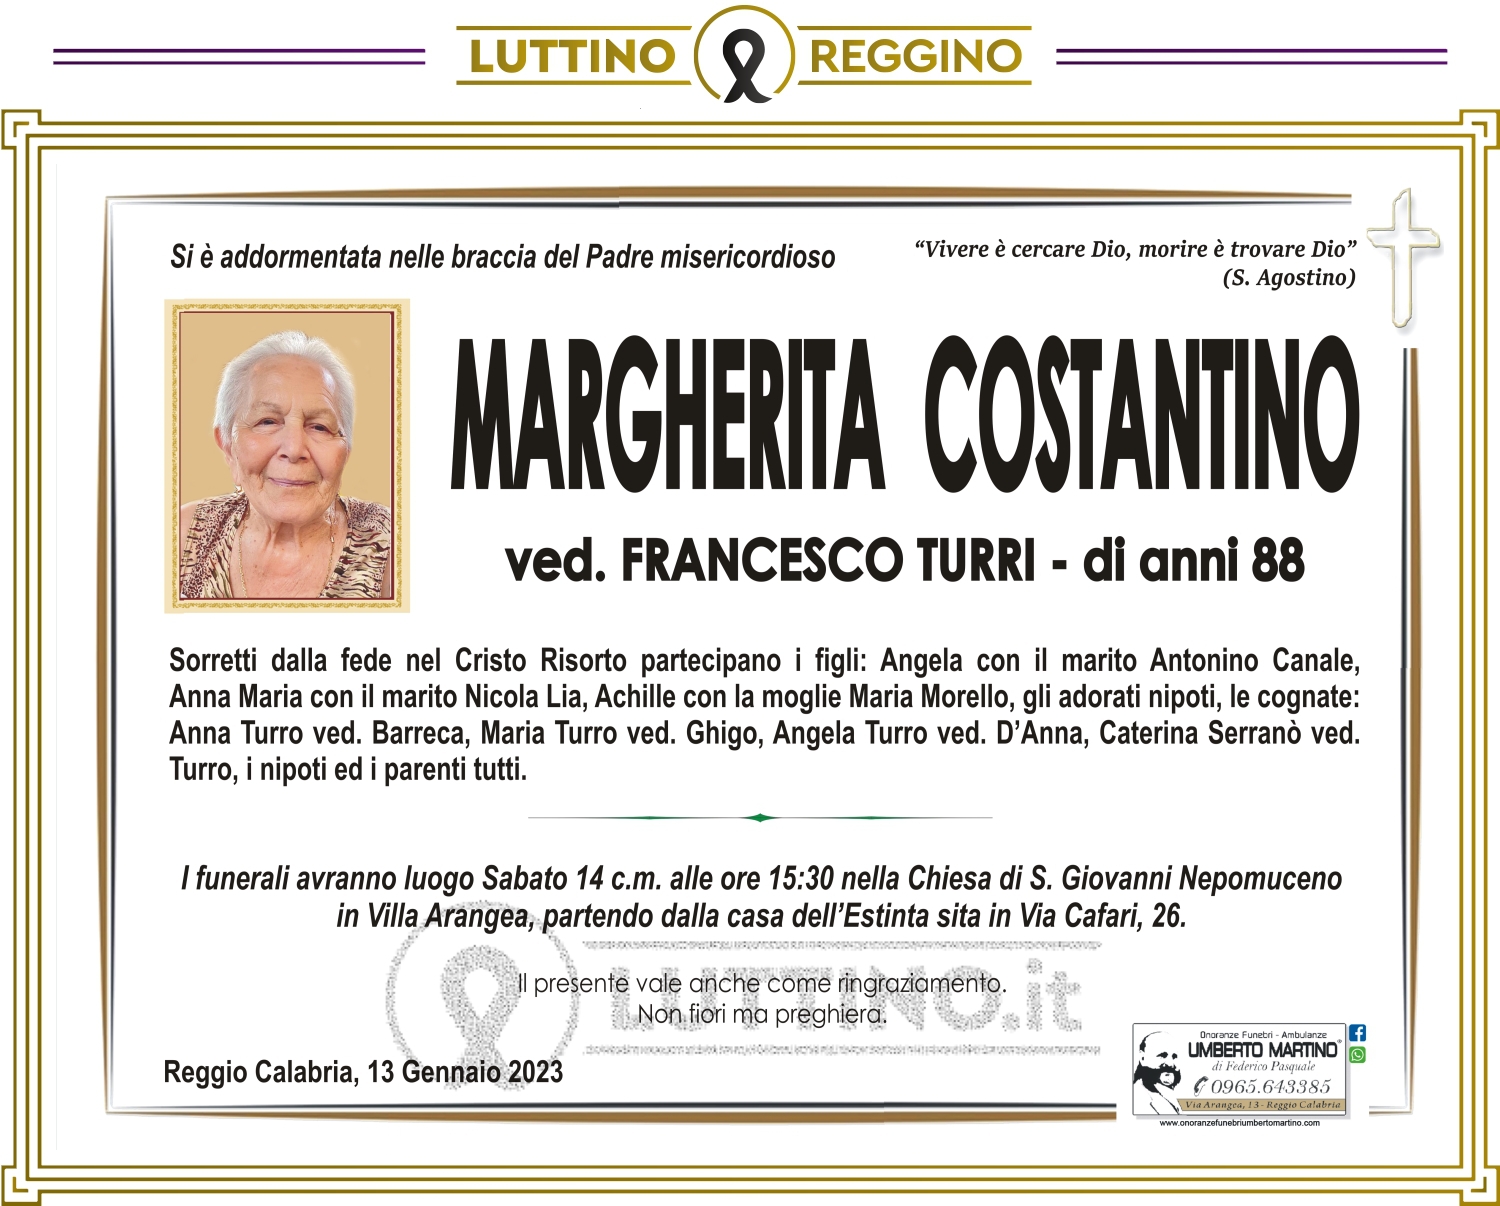 Margherita Costantino